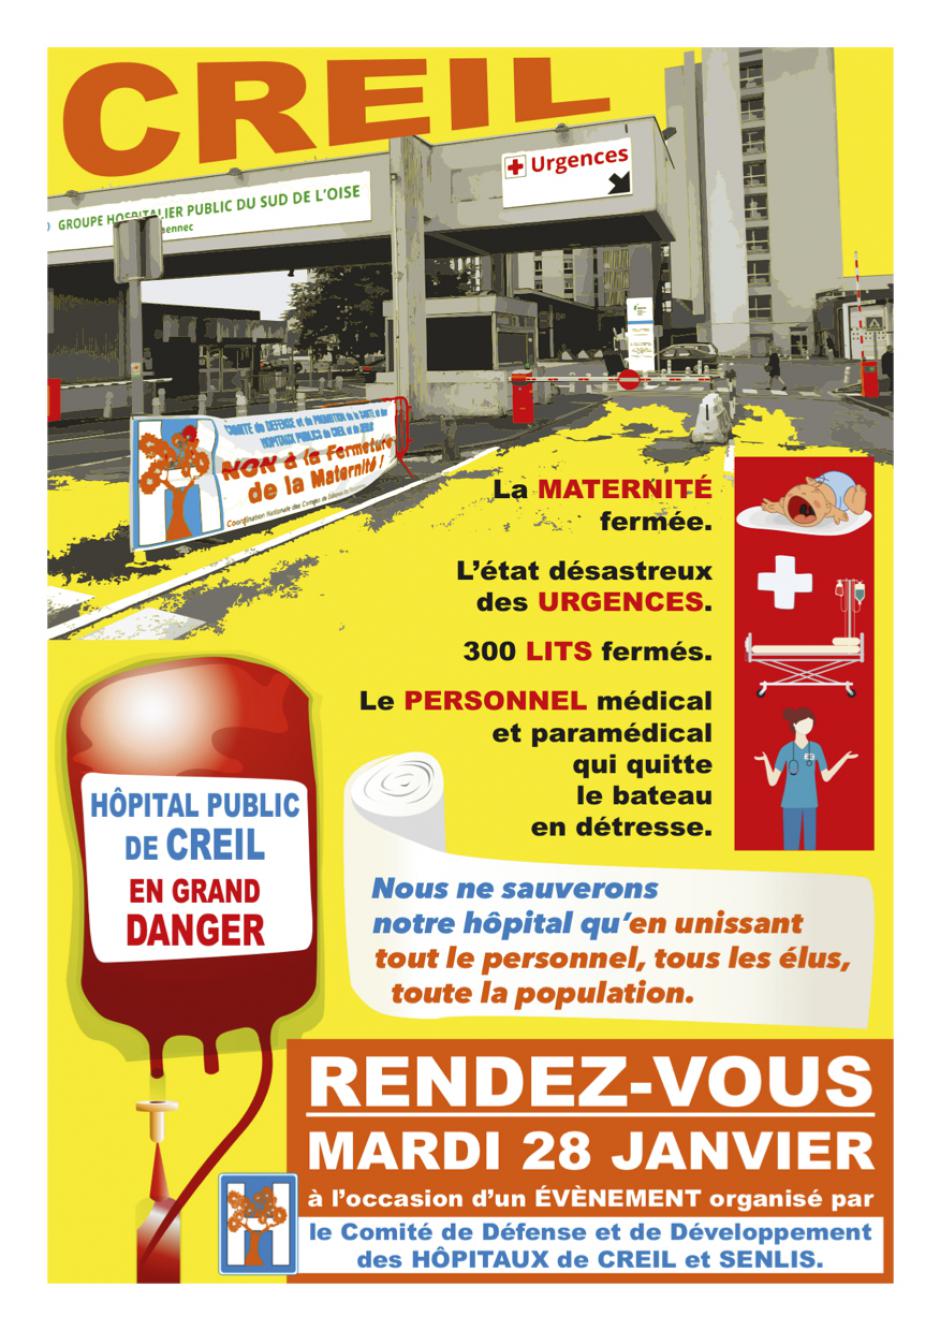 Flyer « Sauvons notre hôpital » - Comité de défense de l'hôpital de Creil, 28 janvier 2020